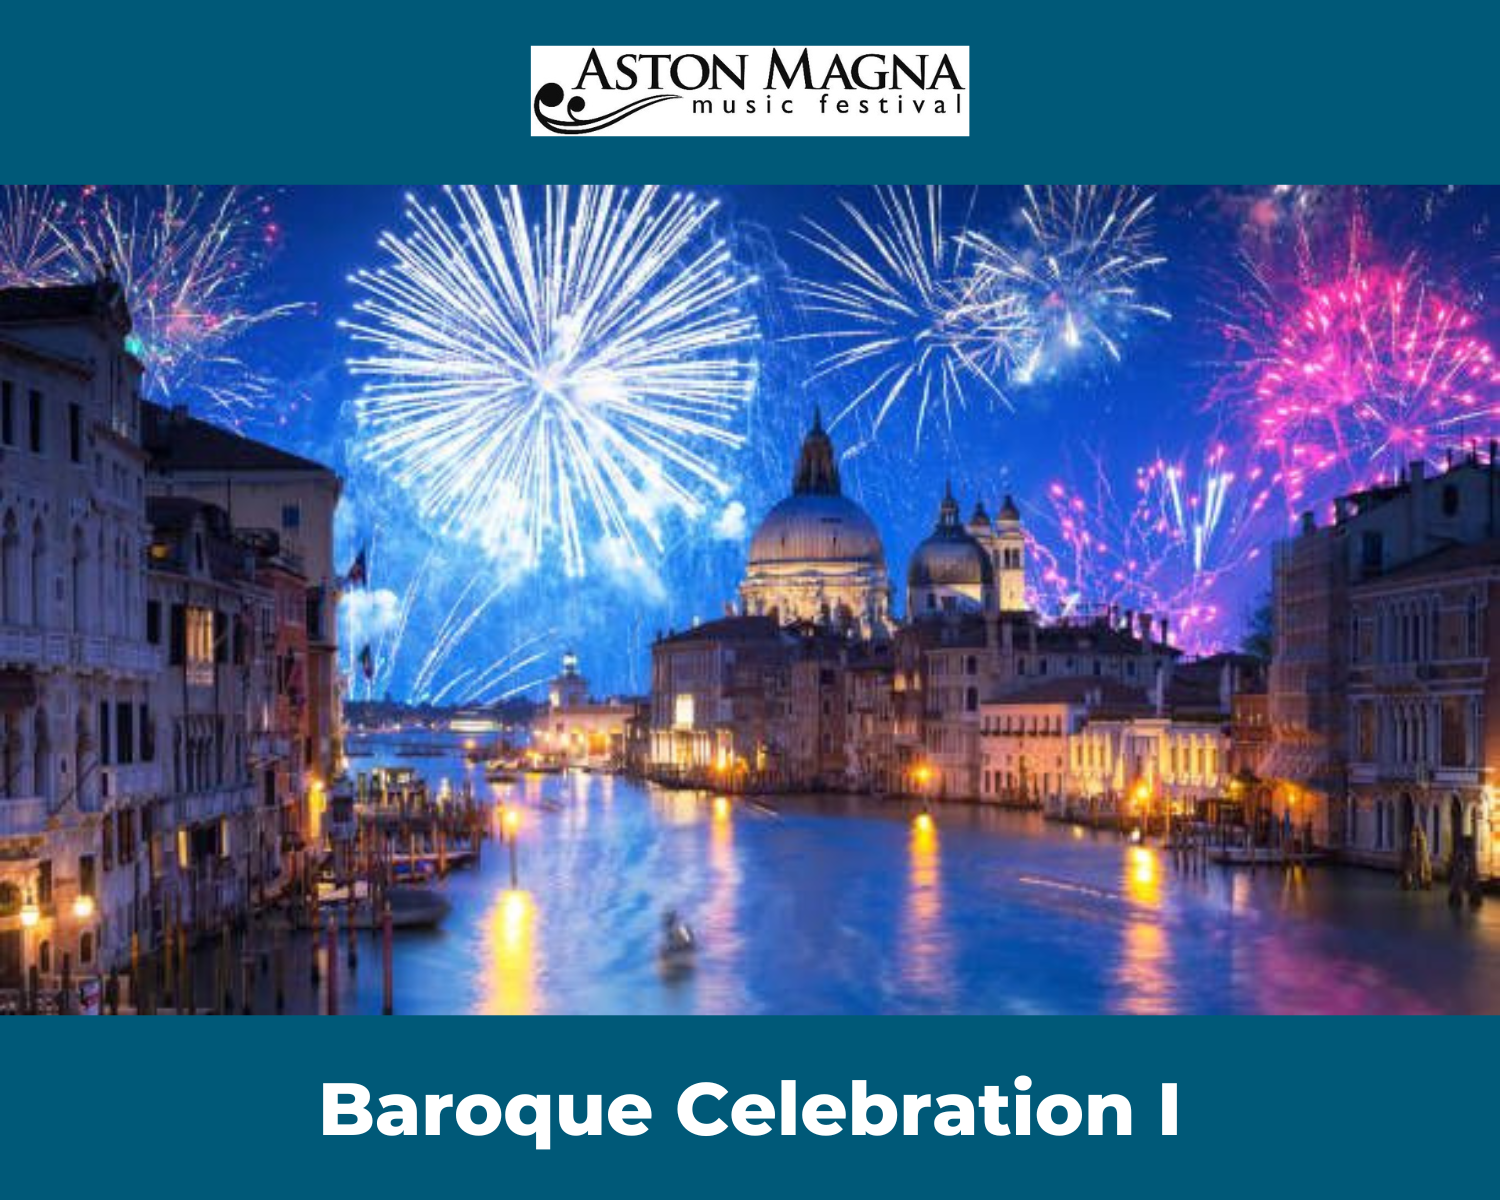 Aston Magna: Baroque Celebration I